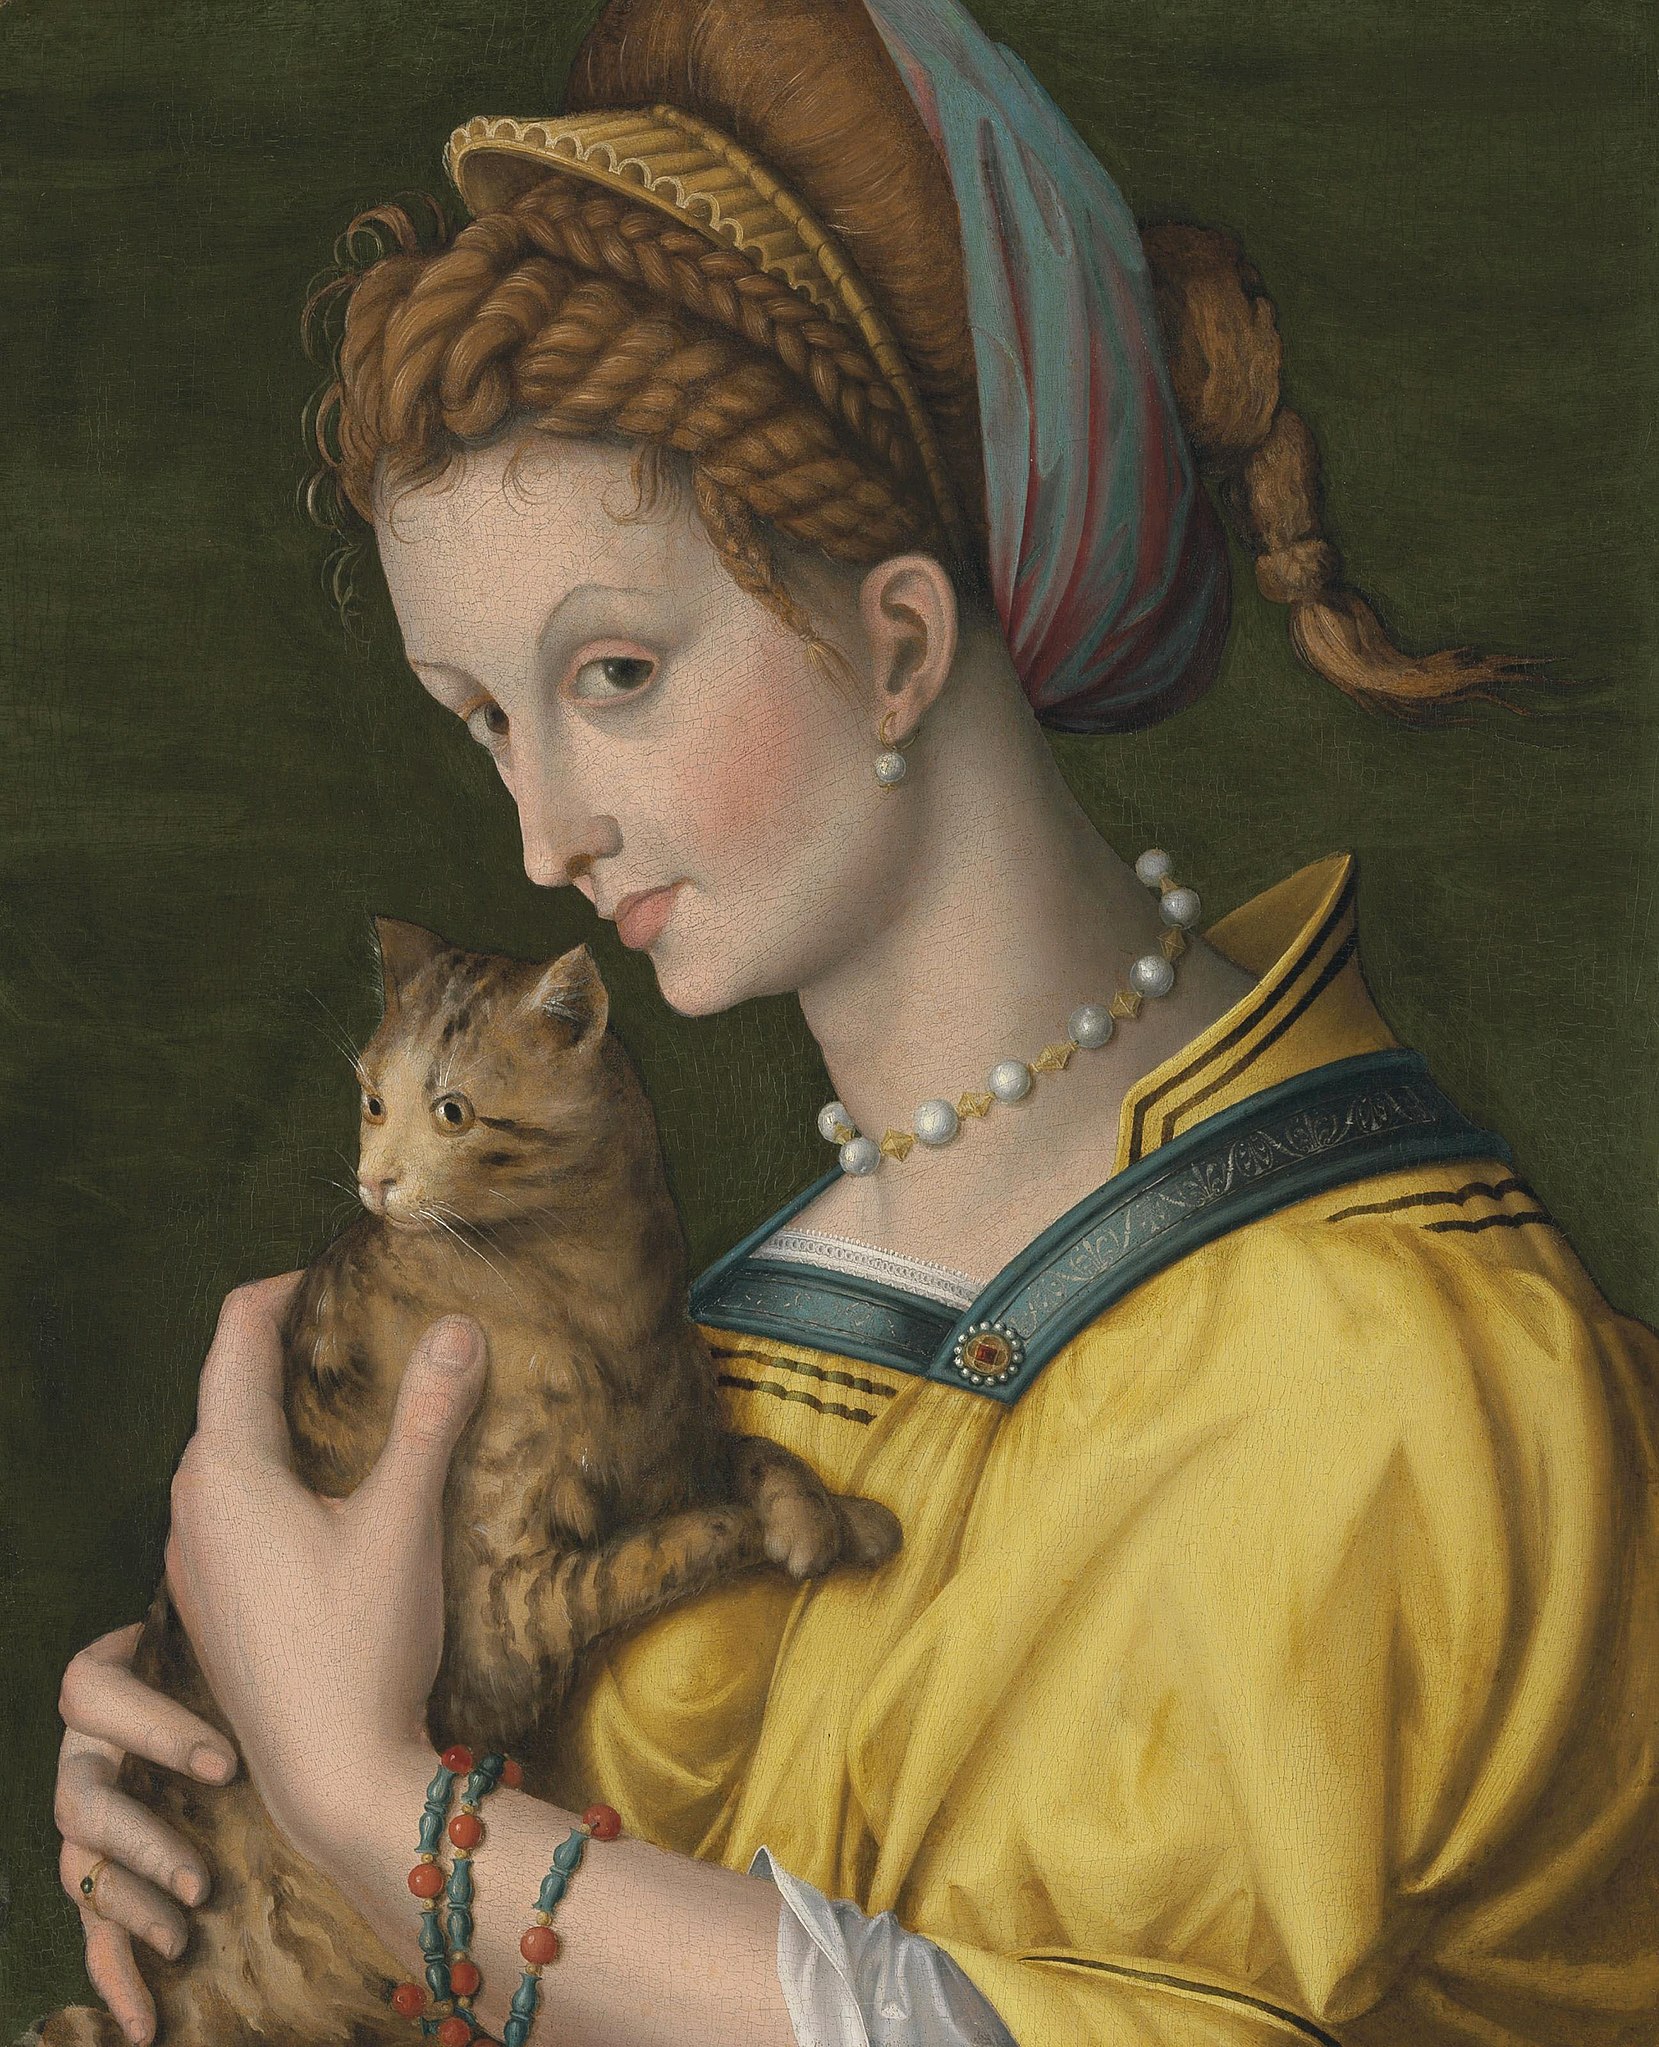 Portrait de jeune femme tenant un chat by Antonio d'Ubertino Verdi, called Bachiacca - Entre 1525 et 1530 - 53,6 x 43,8 cm collection privée